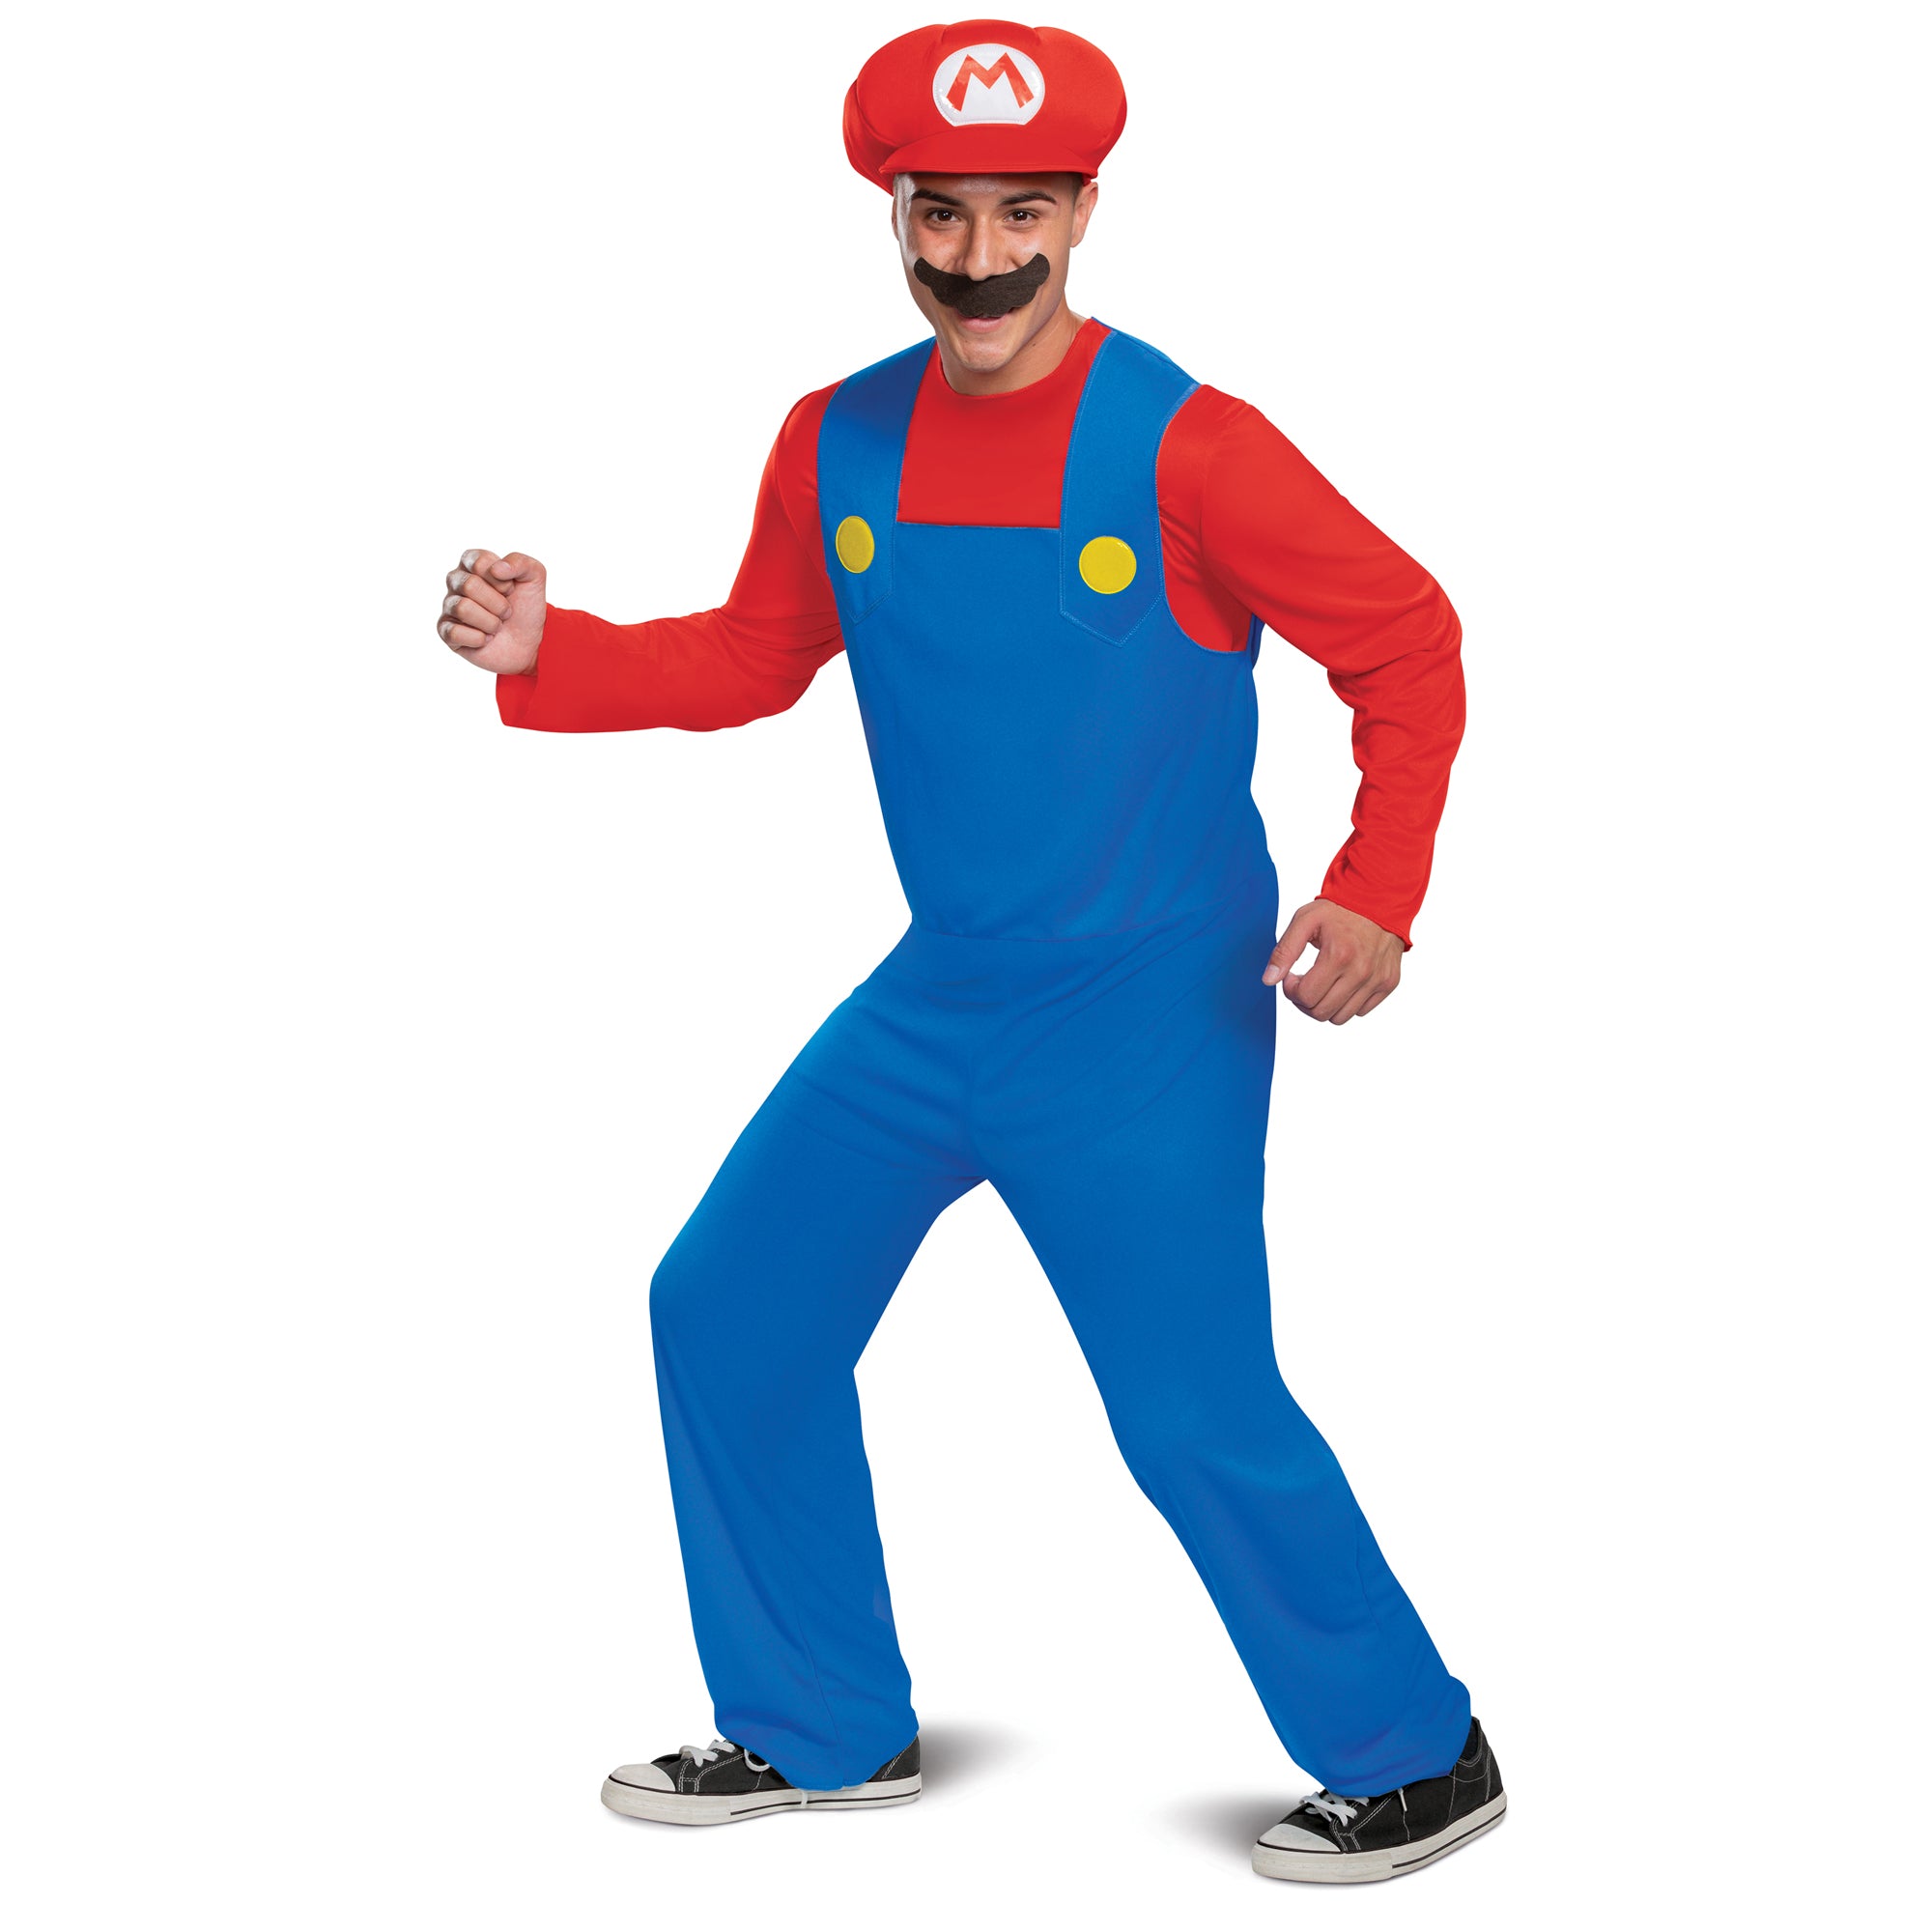 Wario, personnage de Super Mario - location de costume adulte